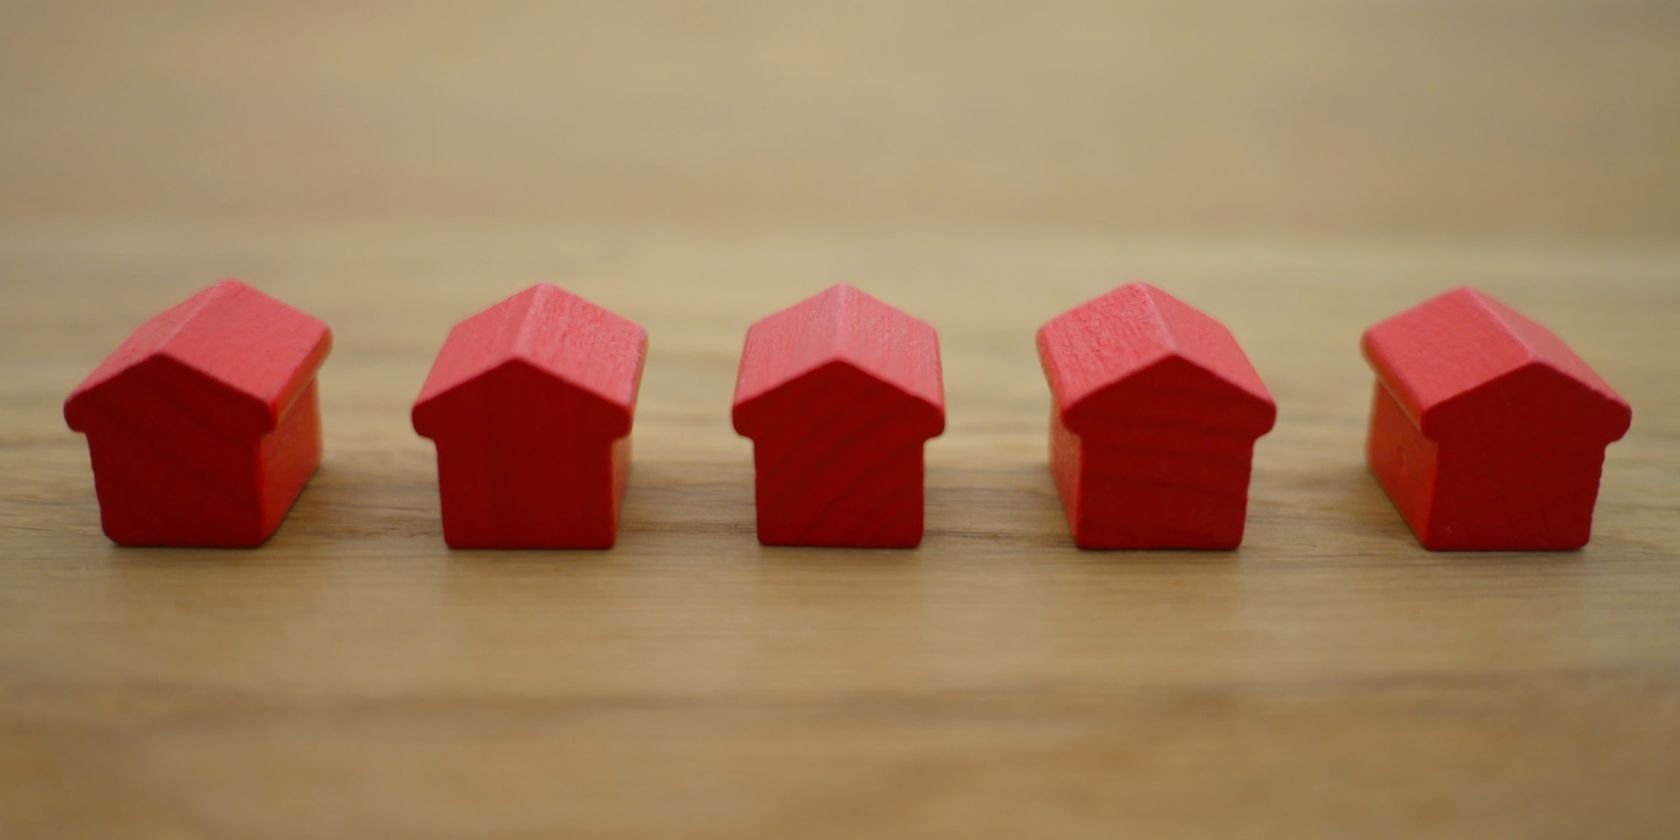 linha de pequenos blocos de madeira vermelhos em forma de casas